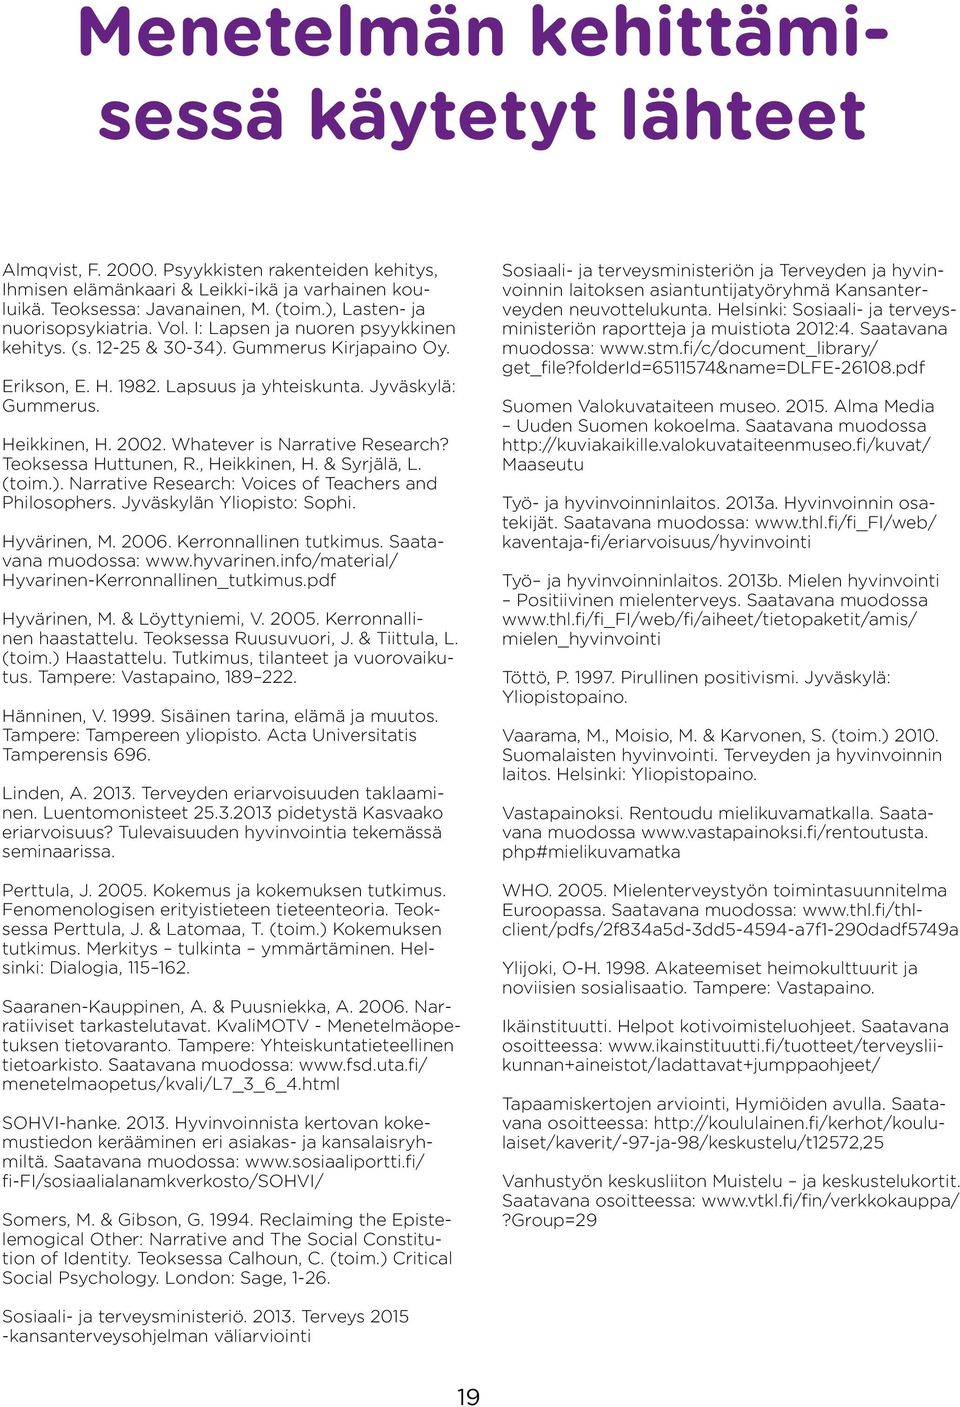 Heikkinen, H. 2002. Whatever is Narrative Research? Teoksessa Huttunen, R., Heikkinen, H. & Syrjälä, L. (toim.). Narrative Research: Voices of Teachers and Philosophers. Jyväskylän Yliopisto: Sophi.